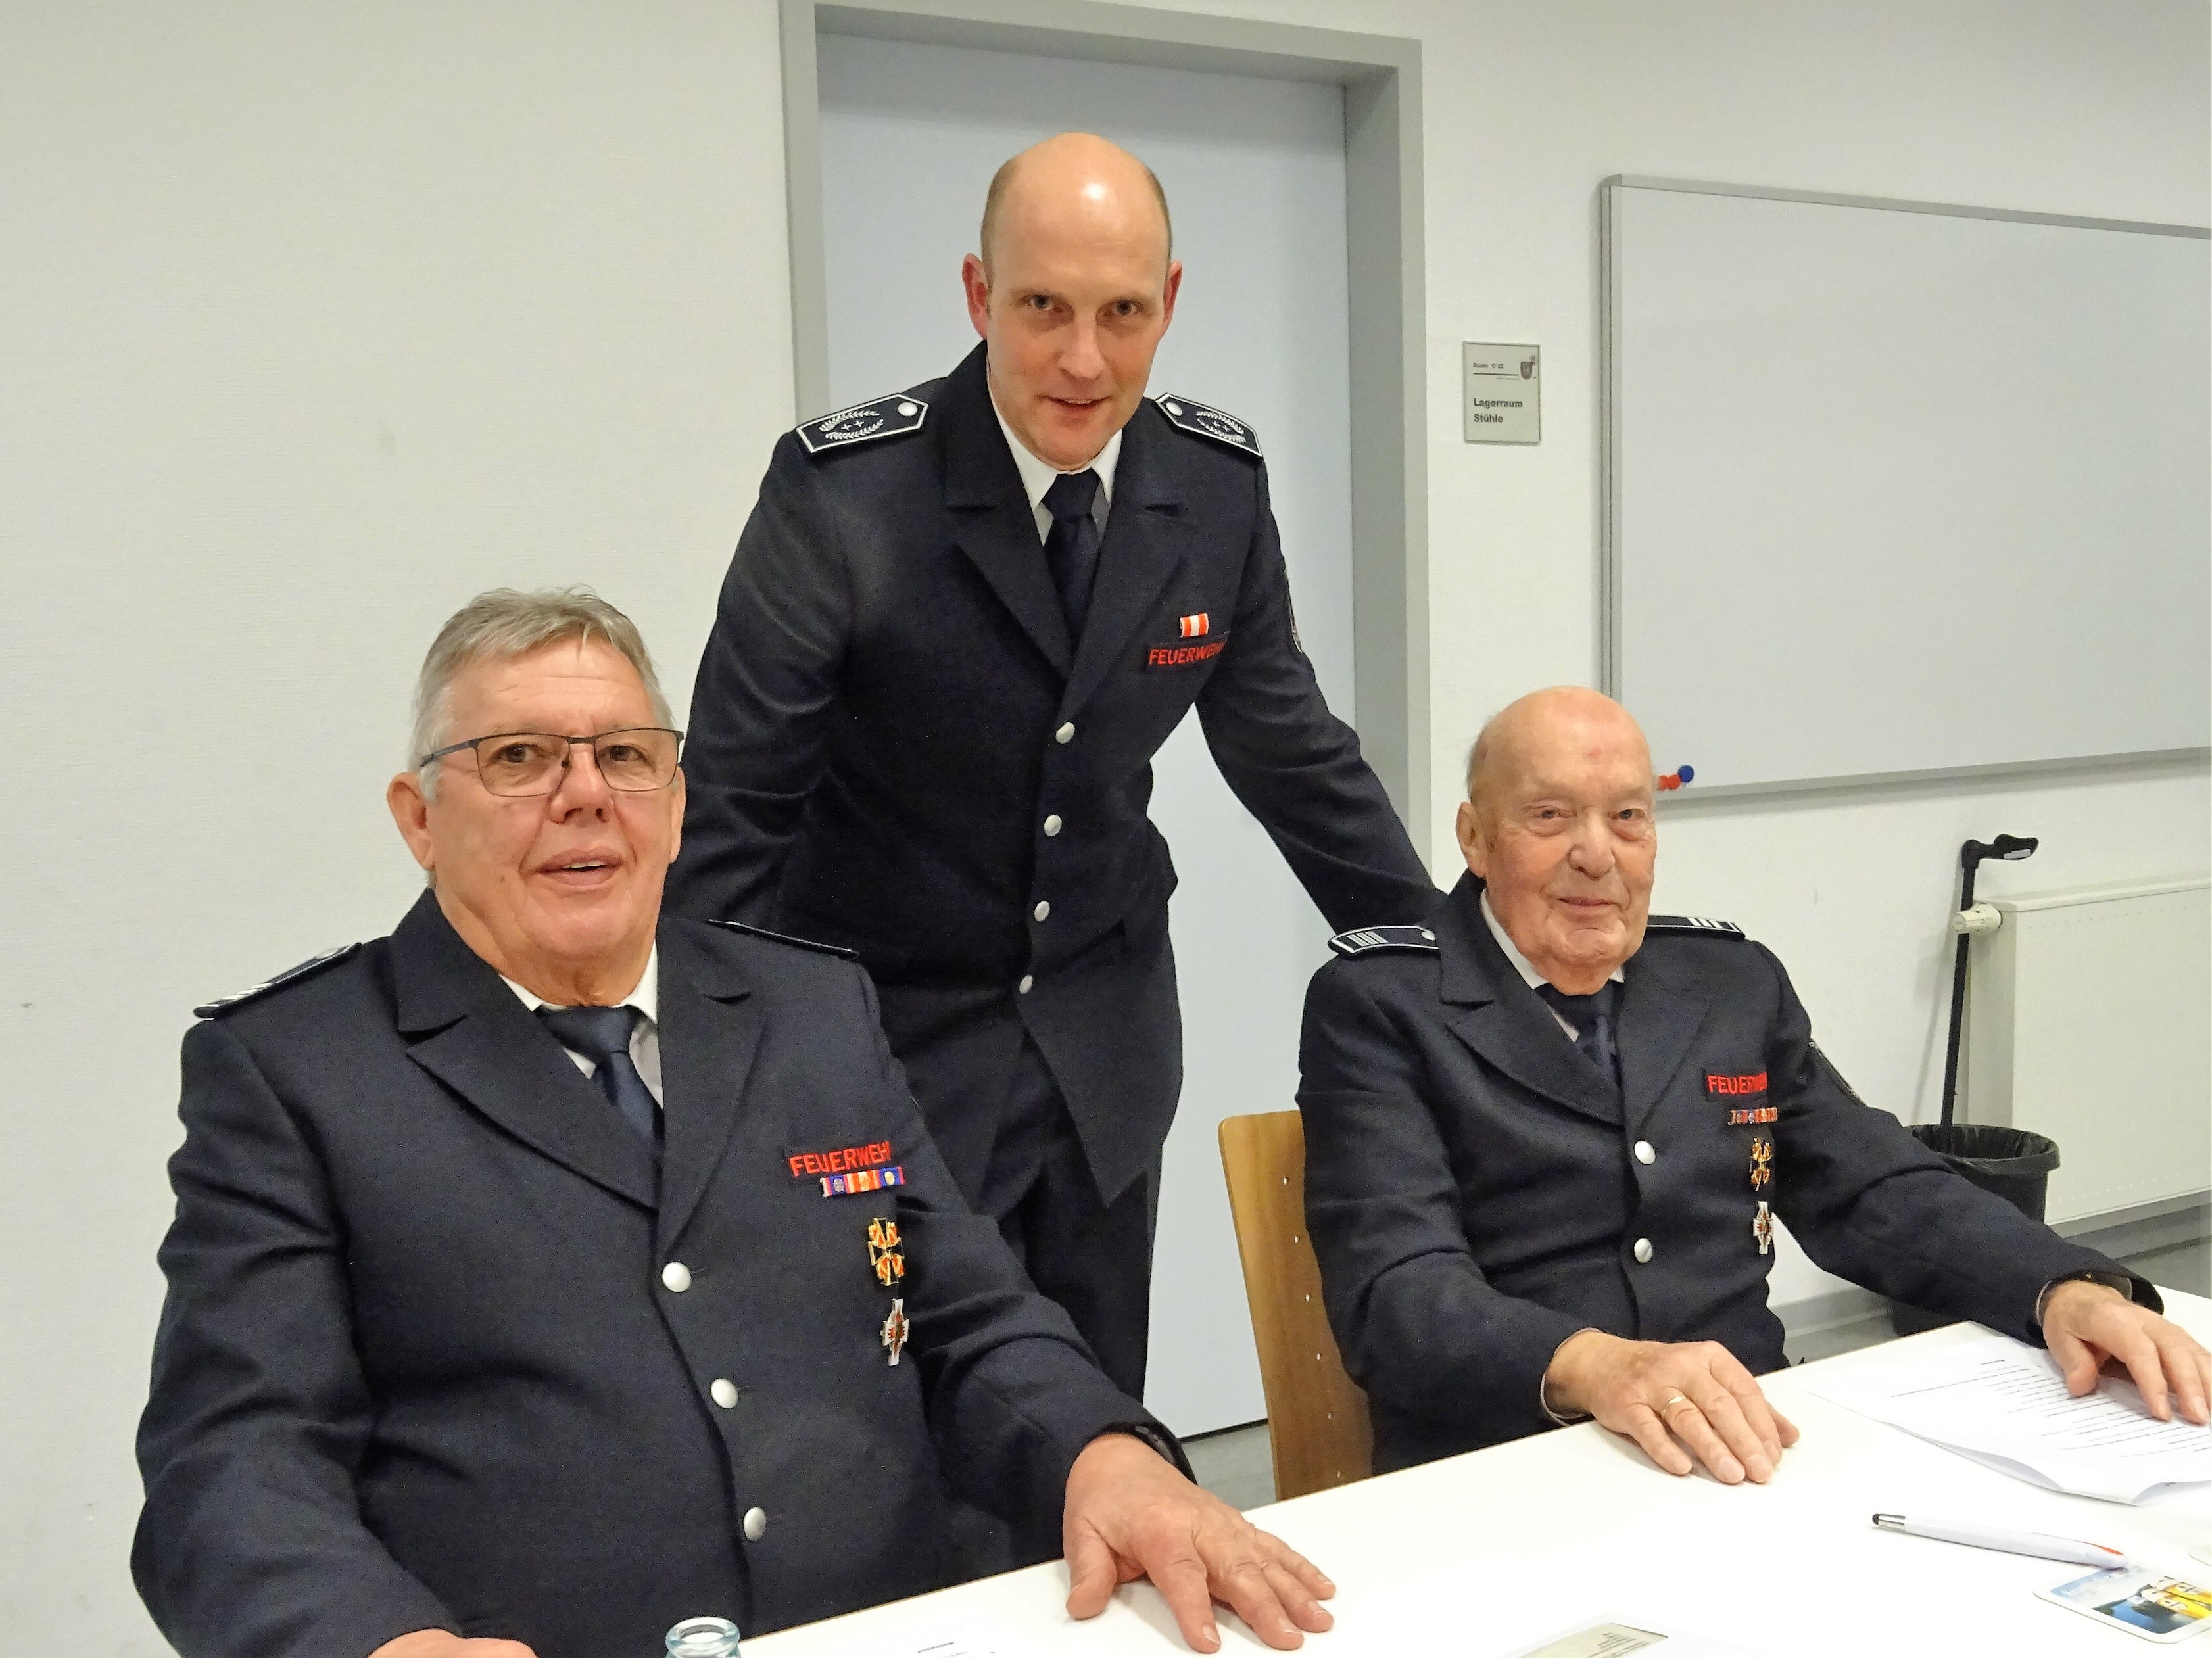 Feuerwehr-Chef Christian Hengstebeck (stehend) mit seinen beiden Vorgängern Friedrich Schulte und Willi Ledig (sitzend, von links) von Sigrid Mynar